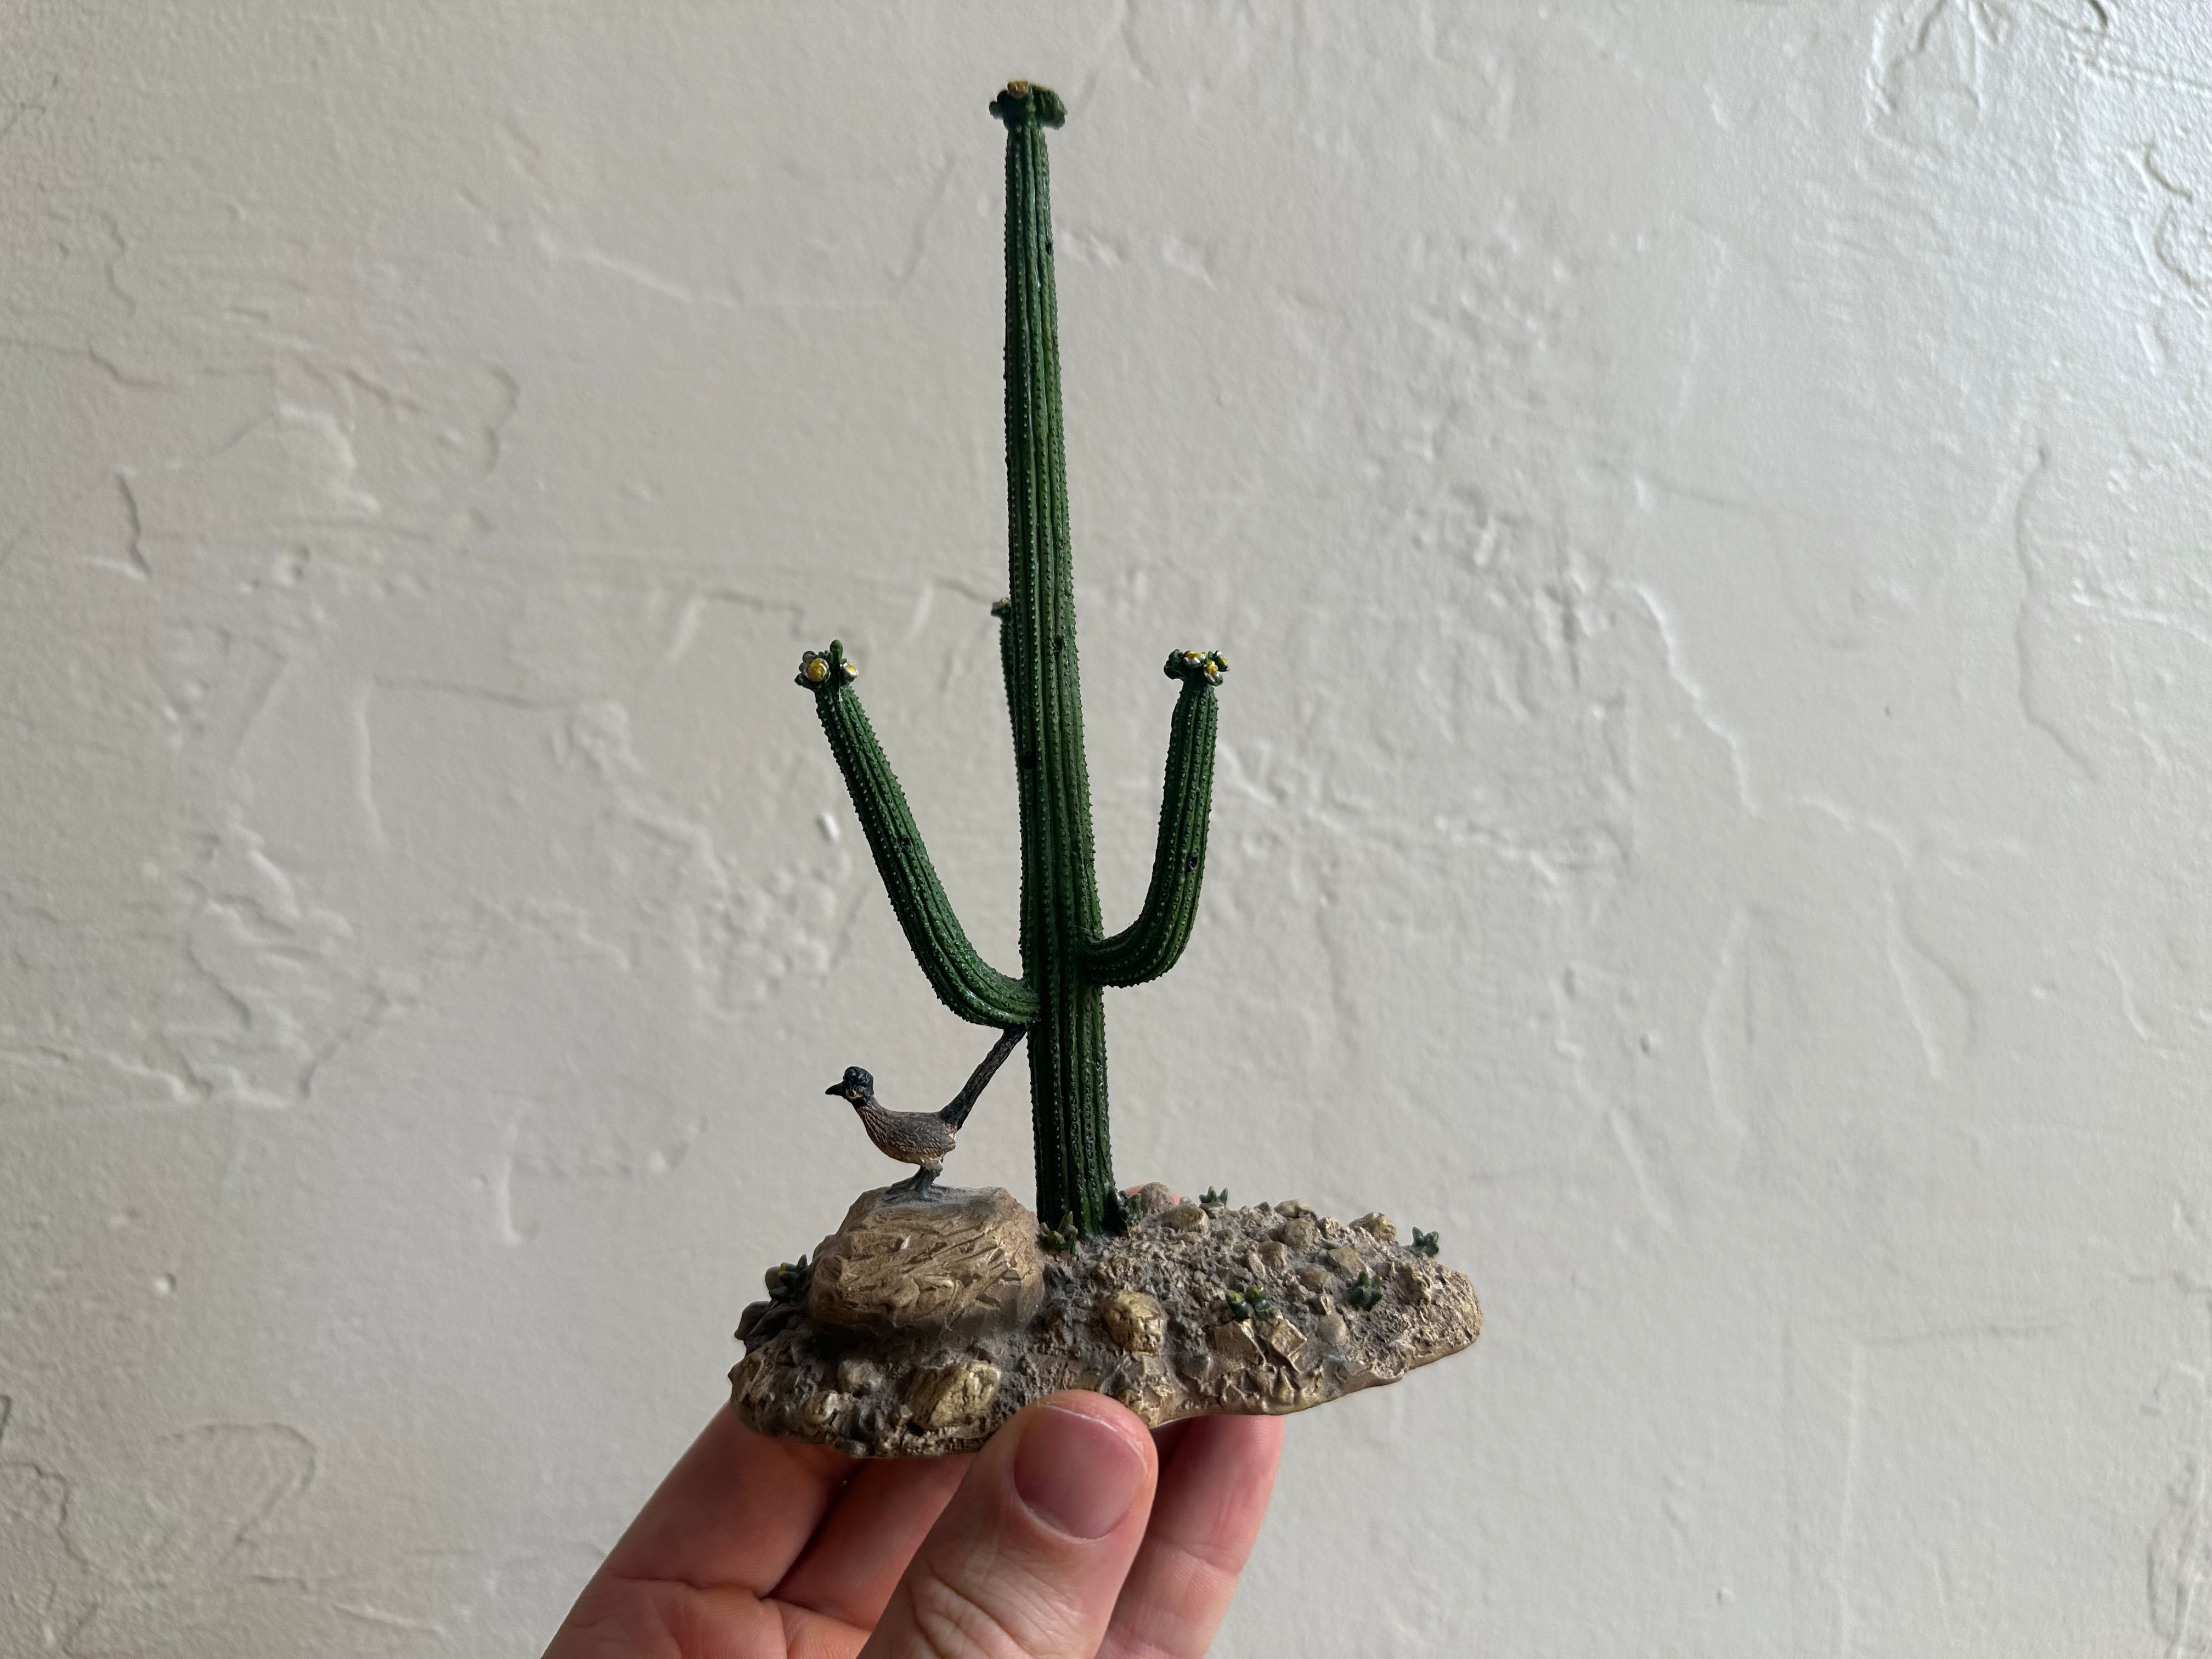 Giant Saguaro Cactus, Arizona, 1994 for sale at Pamono